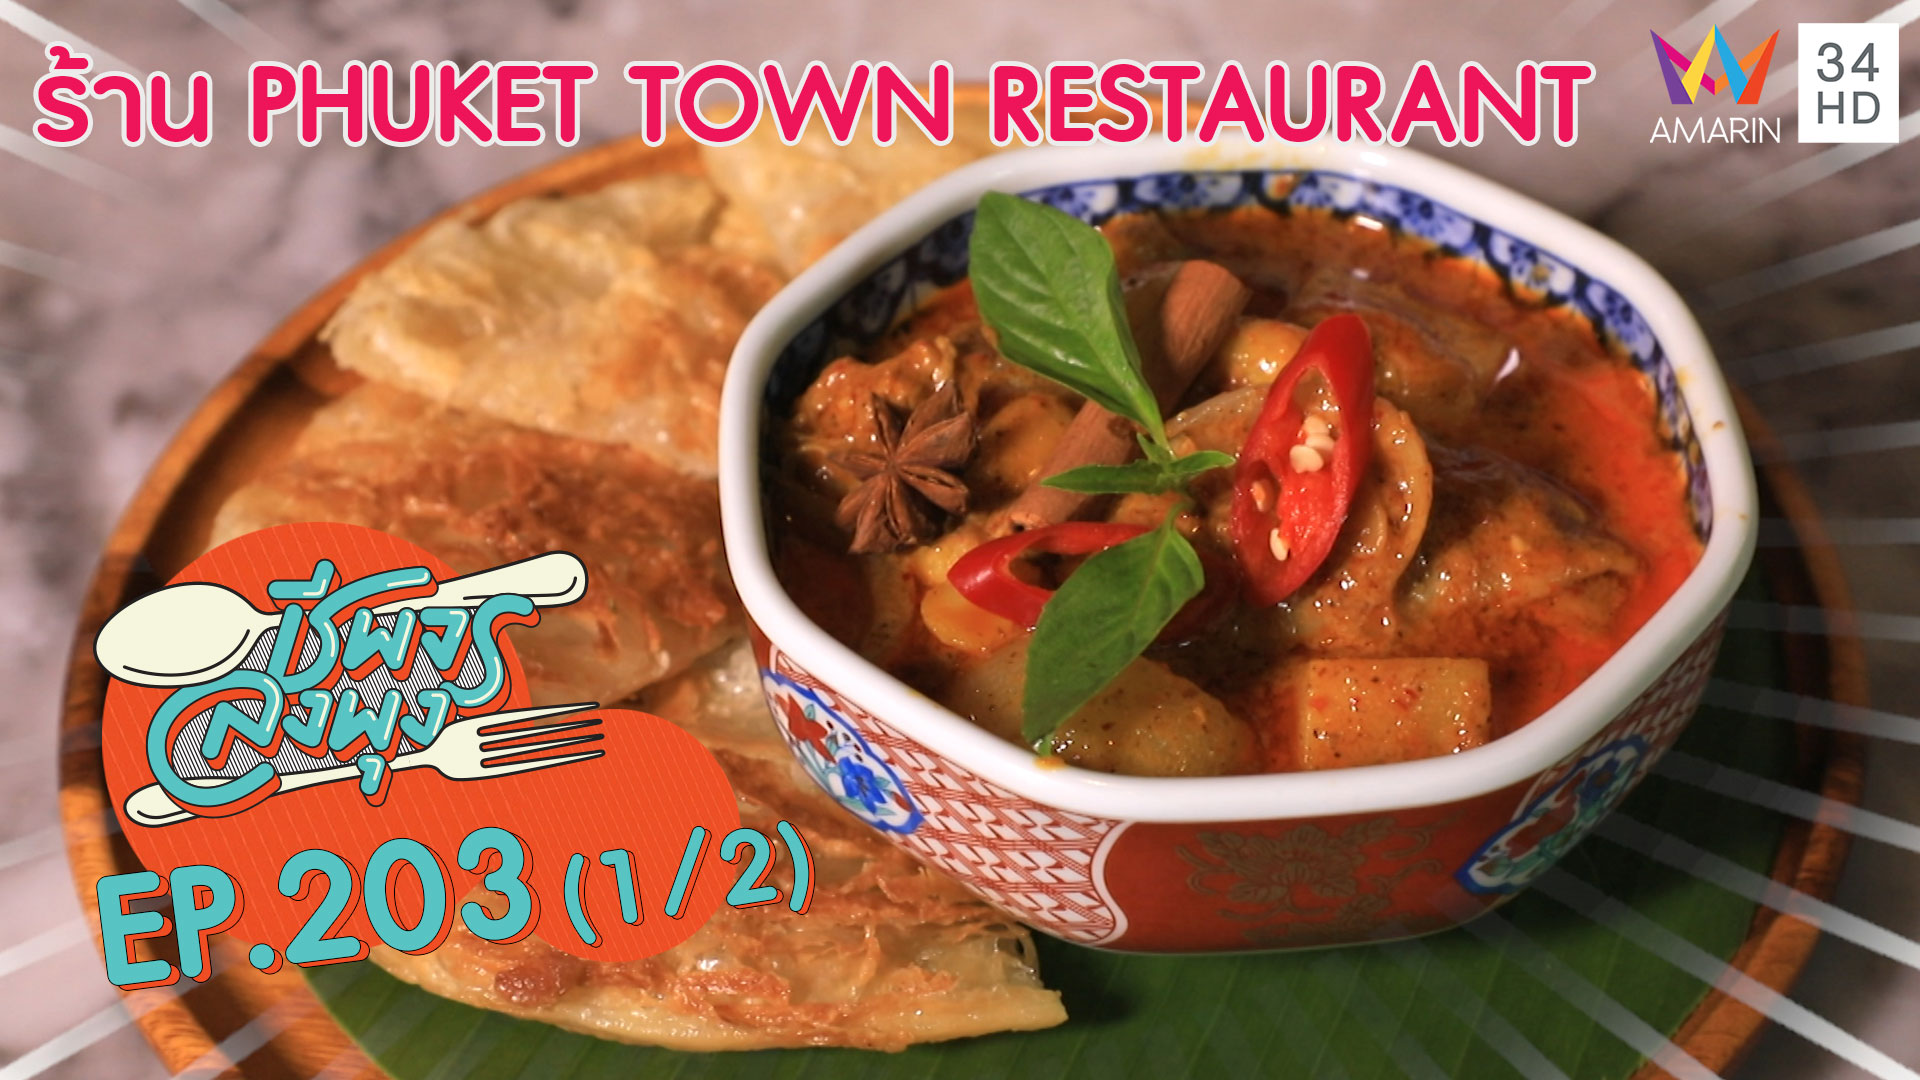 อร่อยเด็ด! อาหารใต้รสเข้มข้น @"ร้าน PHUKET TOWN RESTAURANT" | ชีพจรลงพุง | 7 มี.ค. 63 (1/2) | AMARIN TVHD34